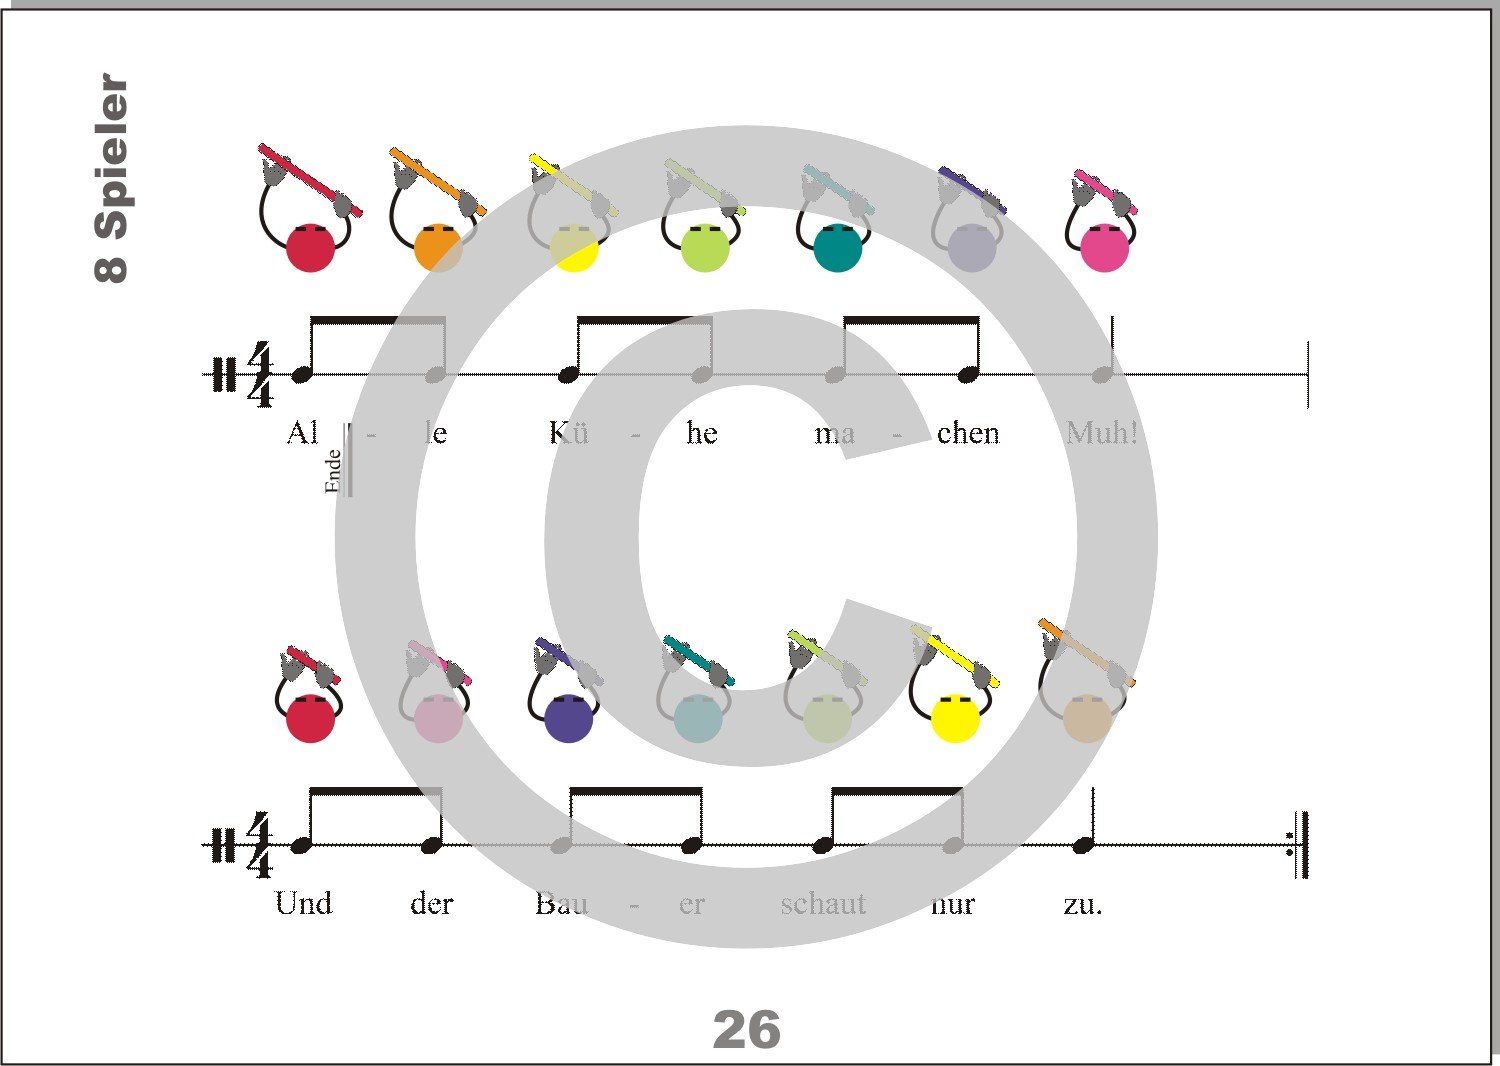 Notenblatt mit Boomwhackers Rhythmen, die durch Bildsymbole sehr einfach gespielt werden können